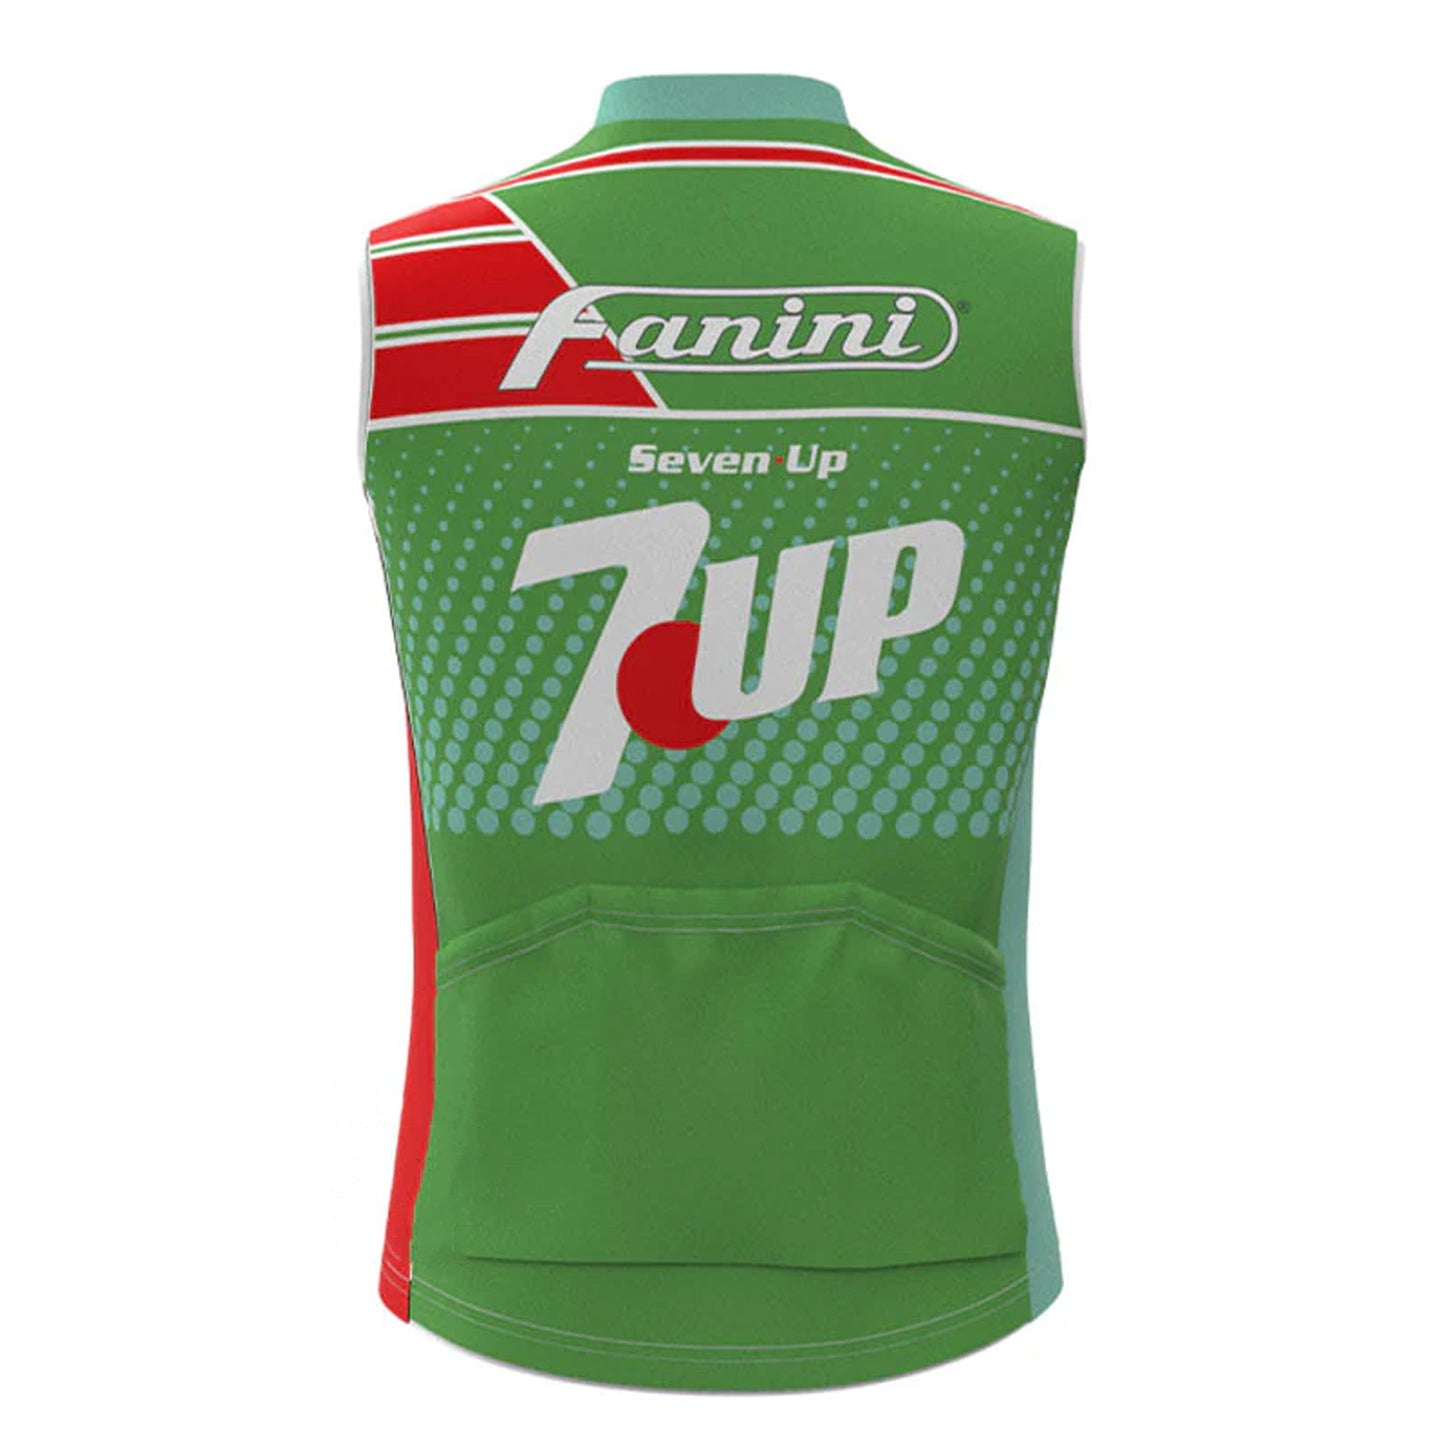 Fanini Seven Up Green Retro MTB Cycling Vest